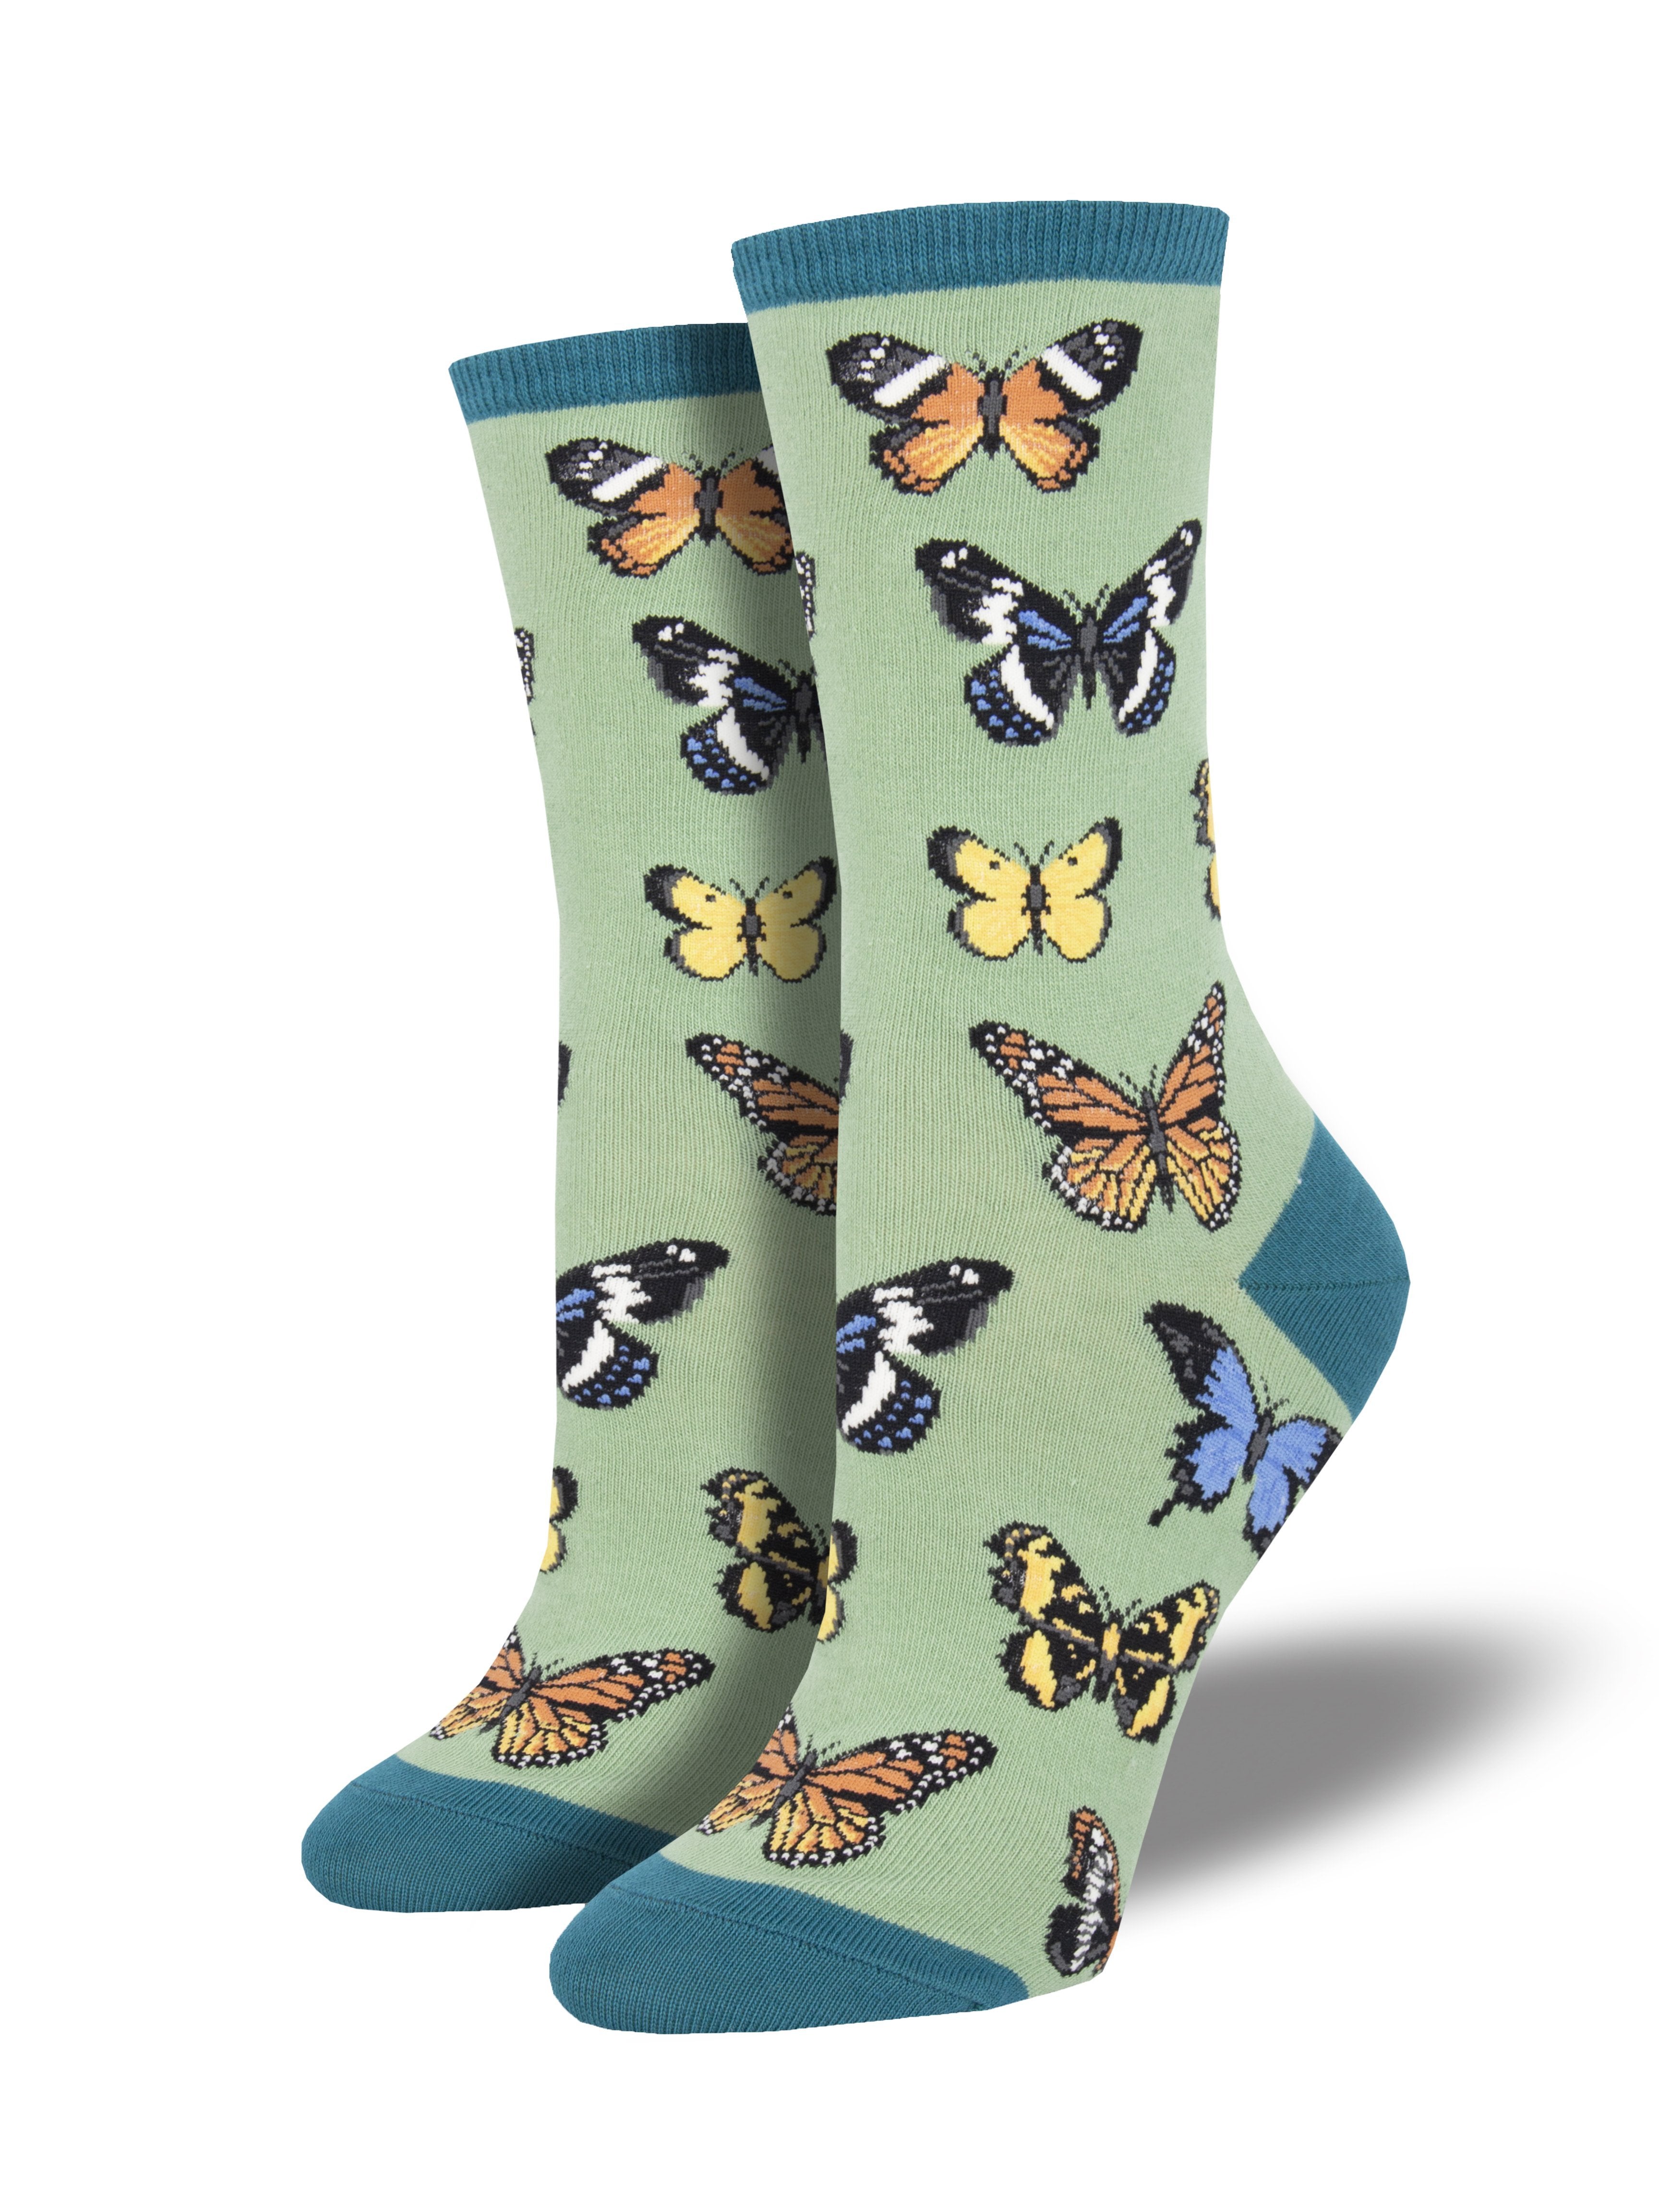 Women's "Majestic Butterflies" Socks